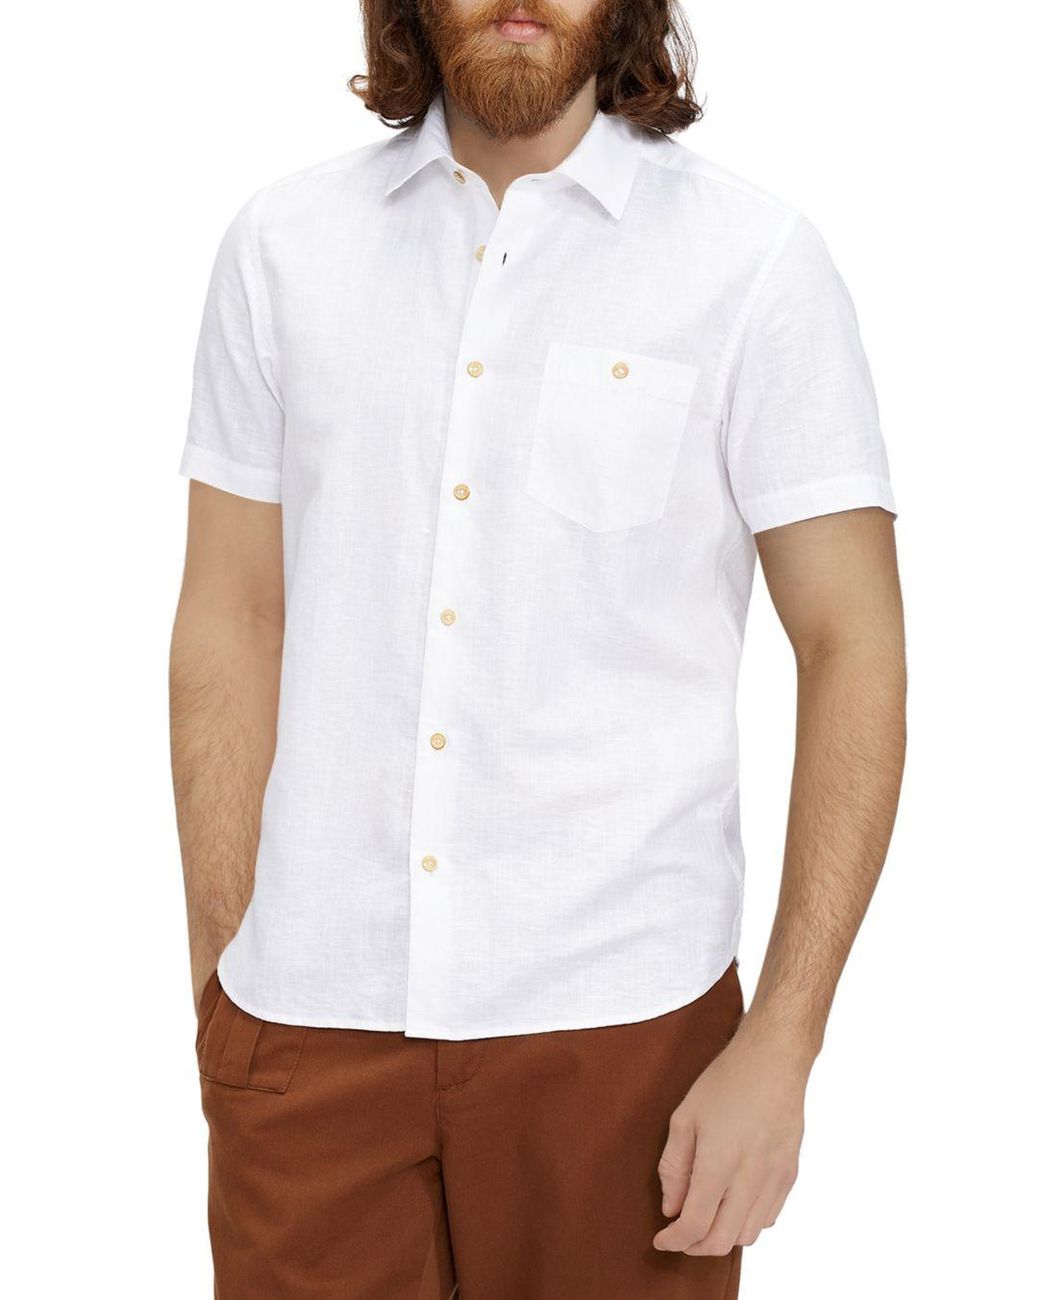 Ted Baker Linen Short Sleeve Button Down Shirt in White for Men - Lyst